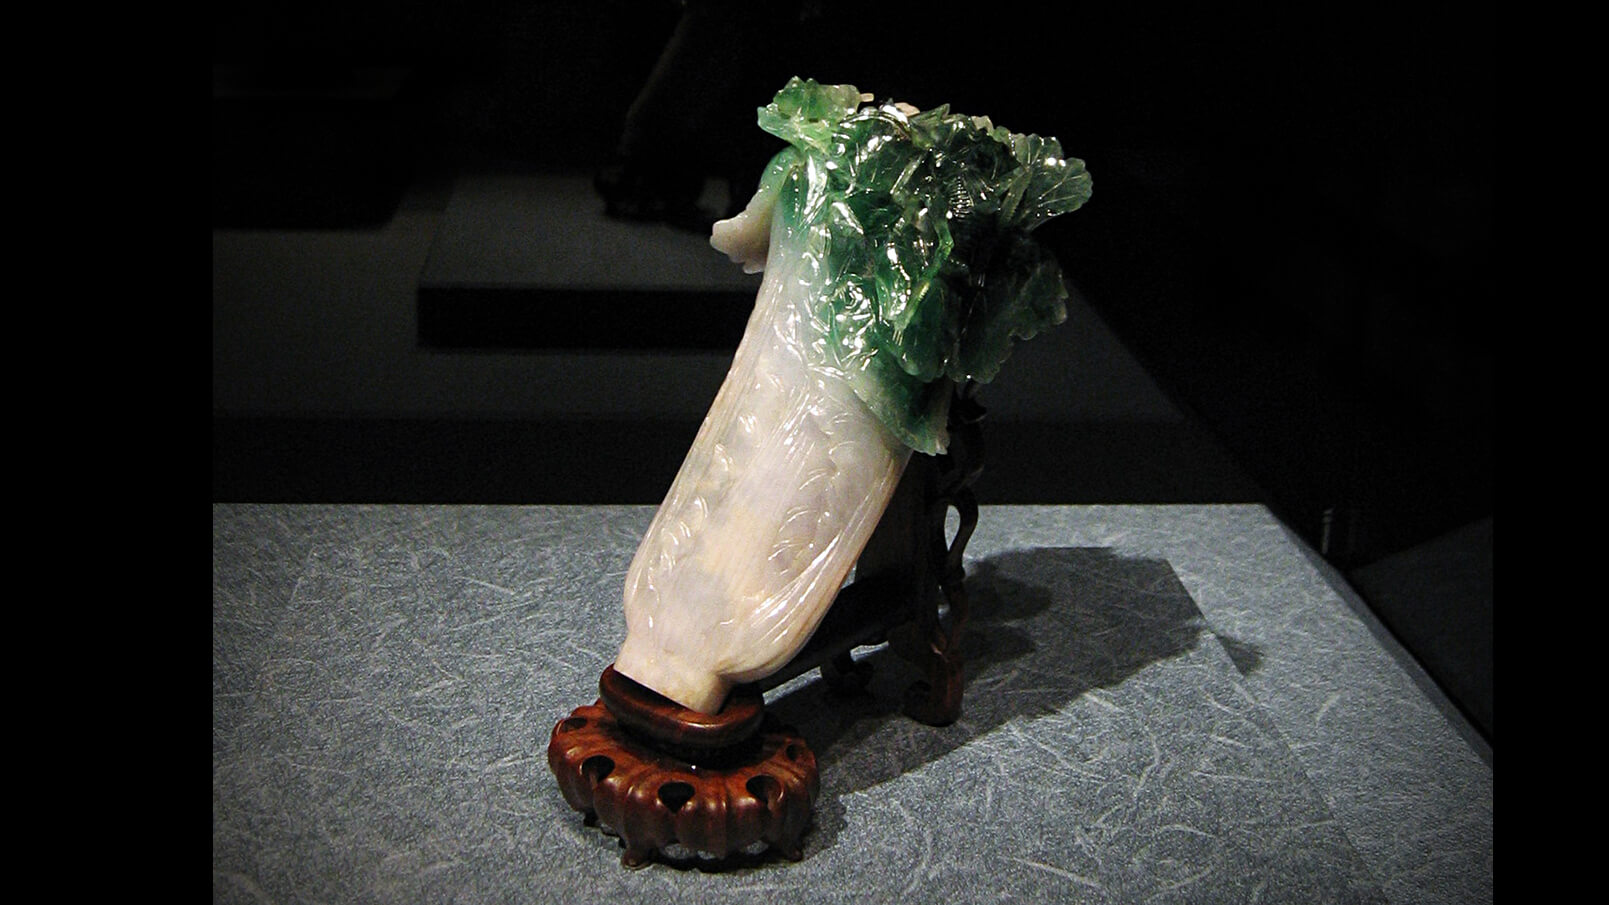 Cẩm Thạch - Jadeite Cabbage (Nguồn: <a href="https://en.wikipedia.org/wiki/Jadeite_Cabbage">Wiki</a>)